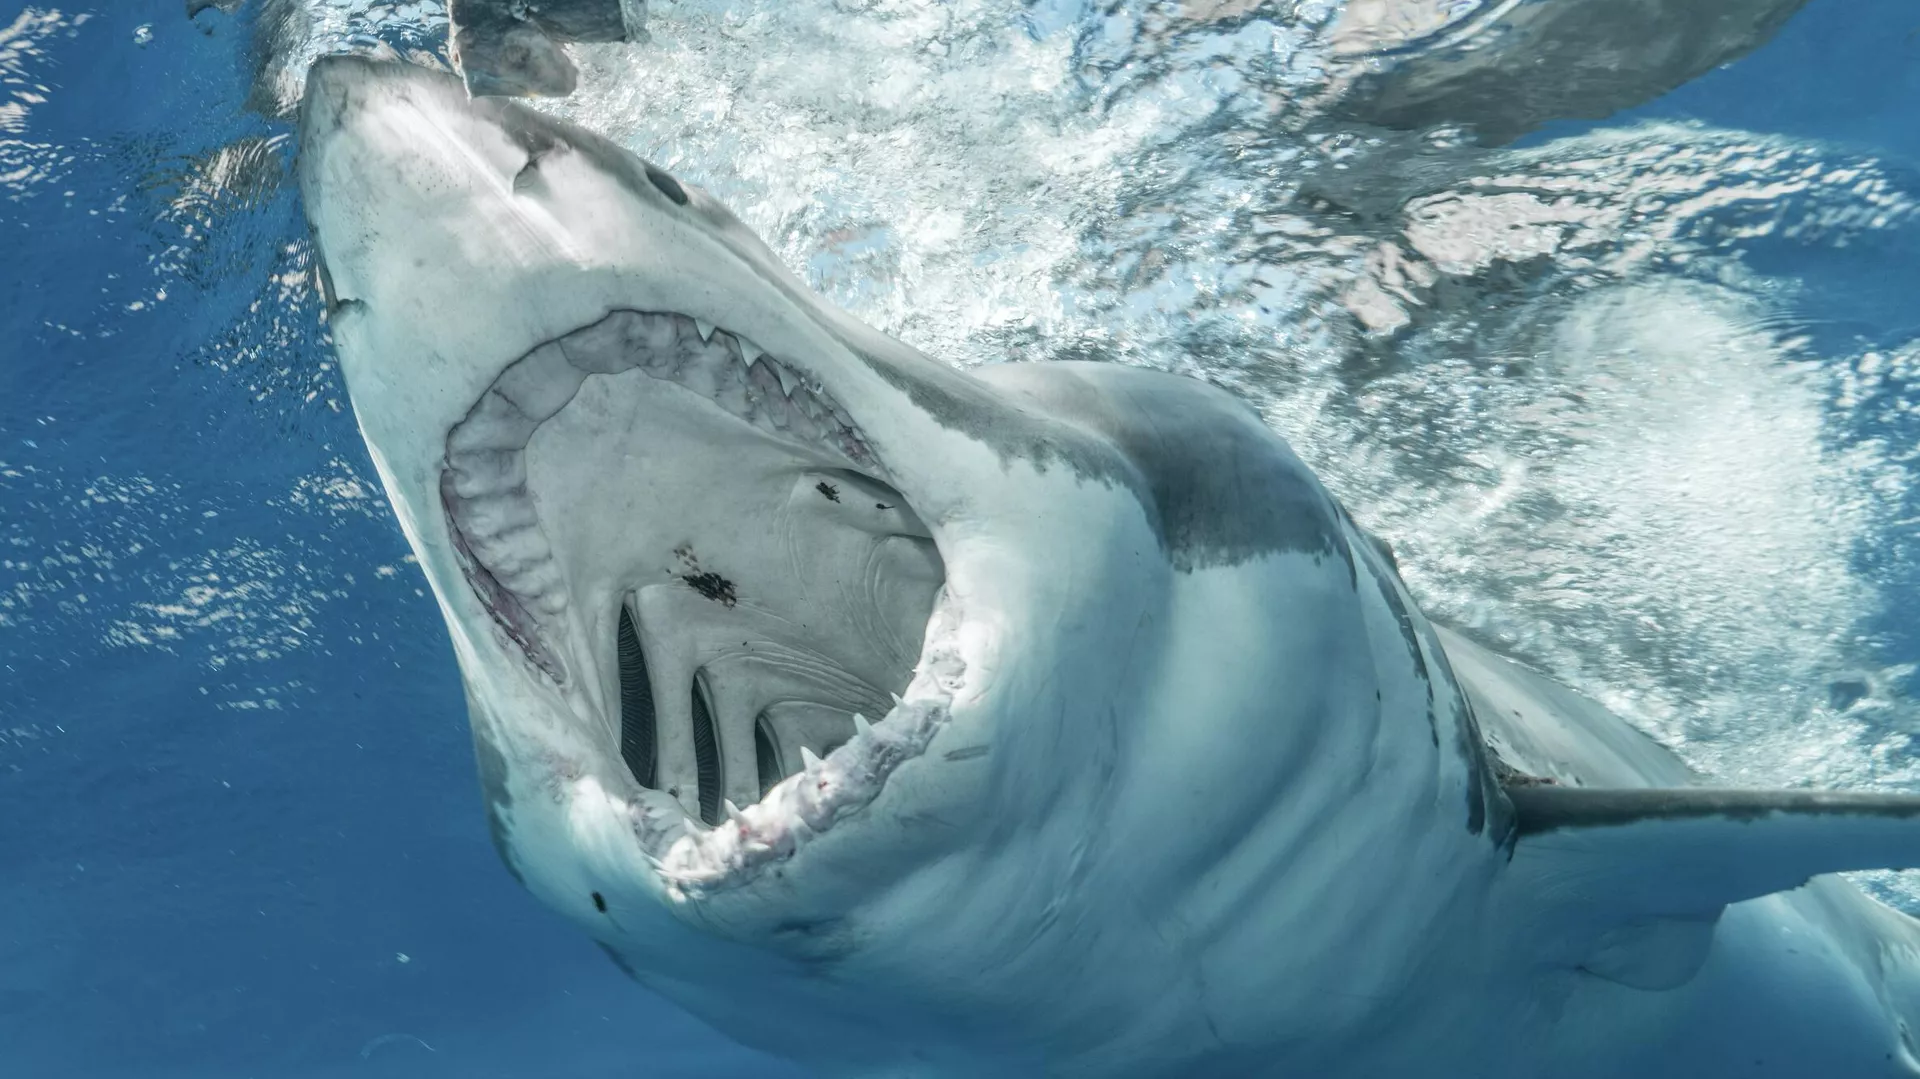  El aterrador momento que vivió una familia cuando un enorme tiburón blanco atacó su bote | Video